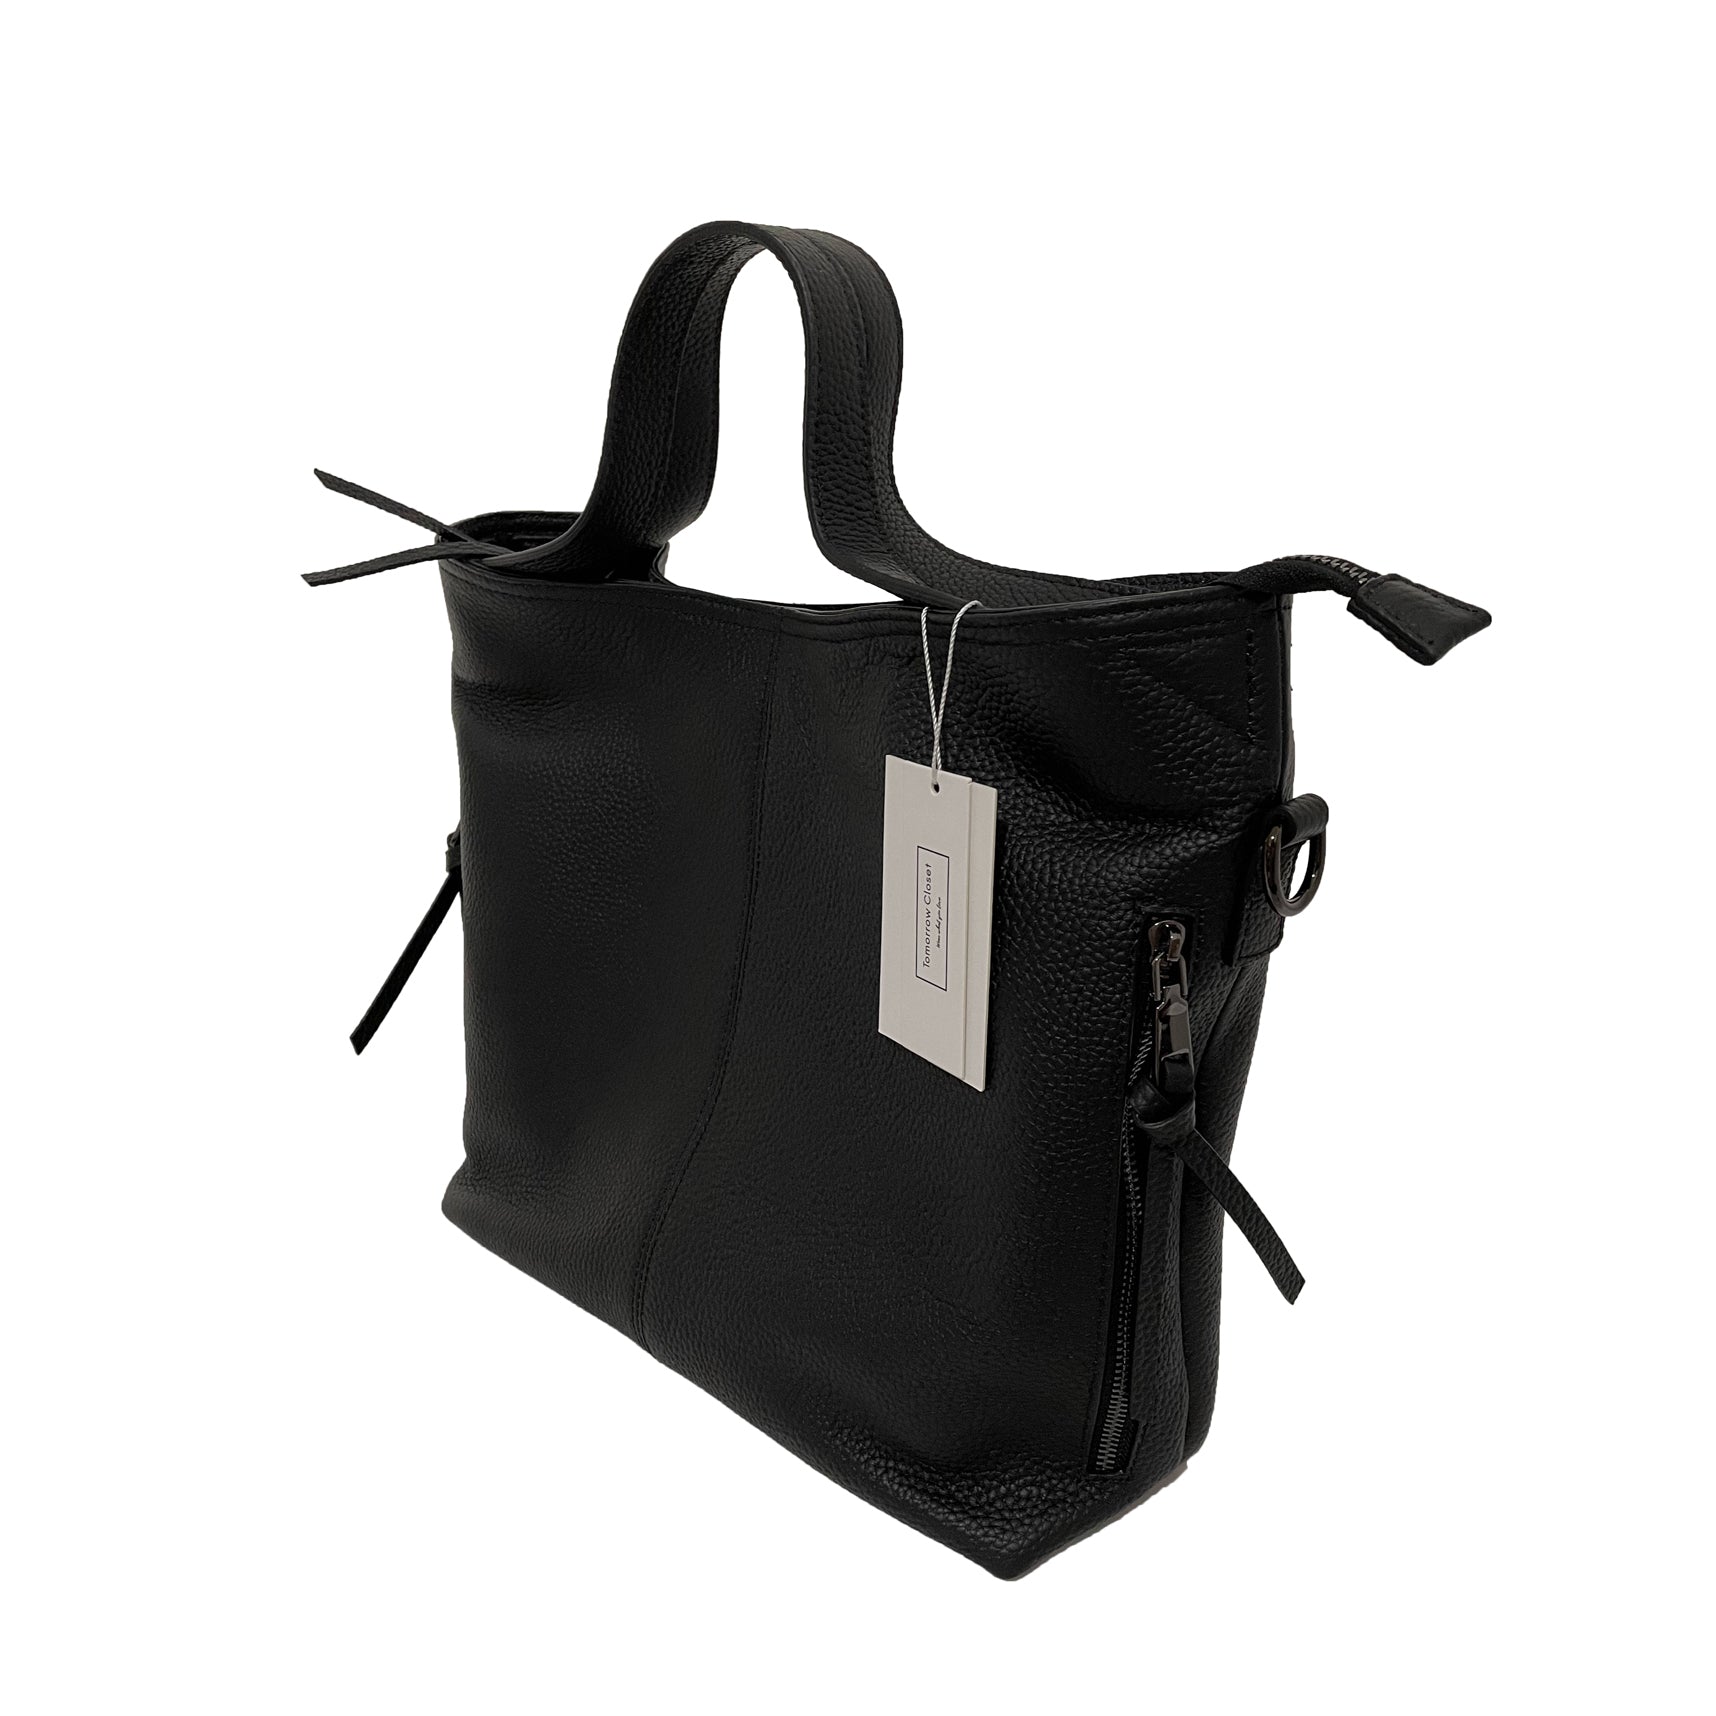 Women's genuine cowhide leather handbag Bora V3 design by Tomorrow Closet